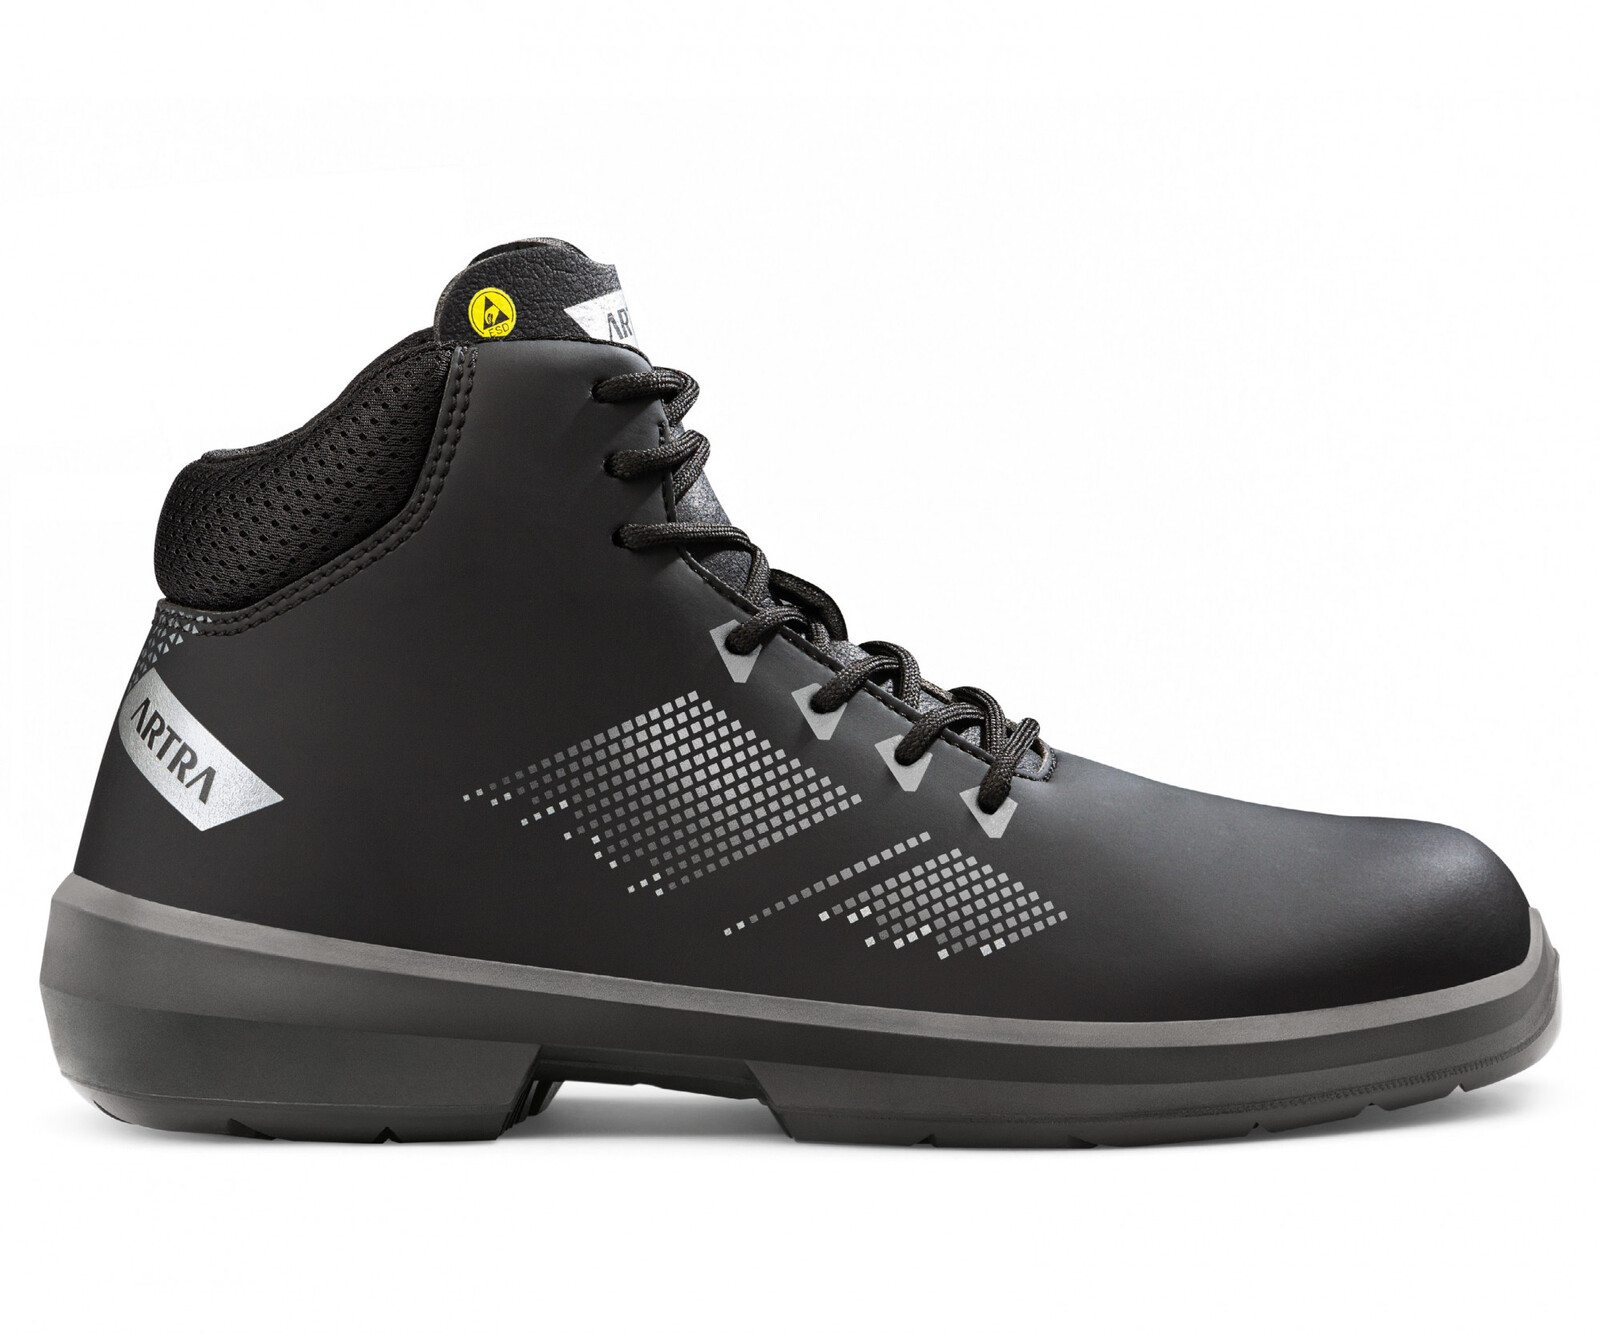 Zimná bezpečnostná členková obuv Artra Arrival 855 676560 S3 CI SRC ESD MF - veľkosť: 40, farba: čierna/sivá